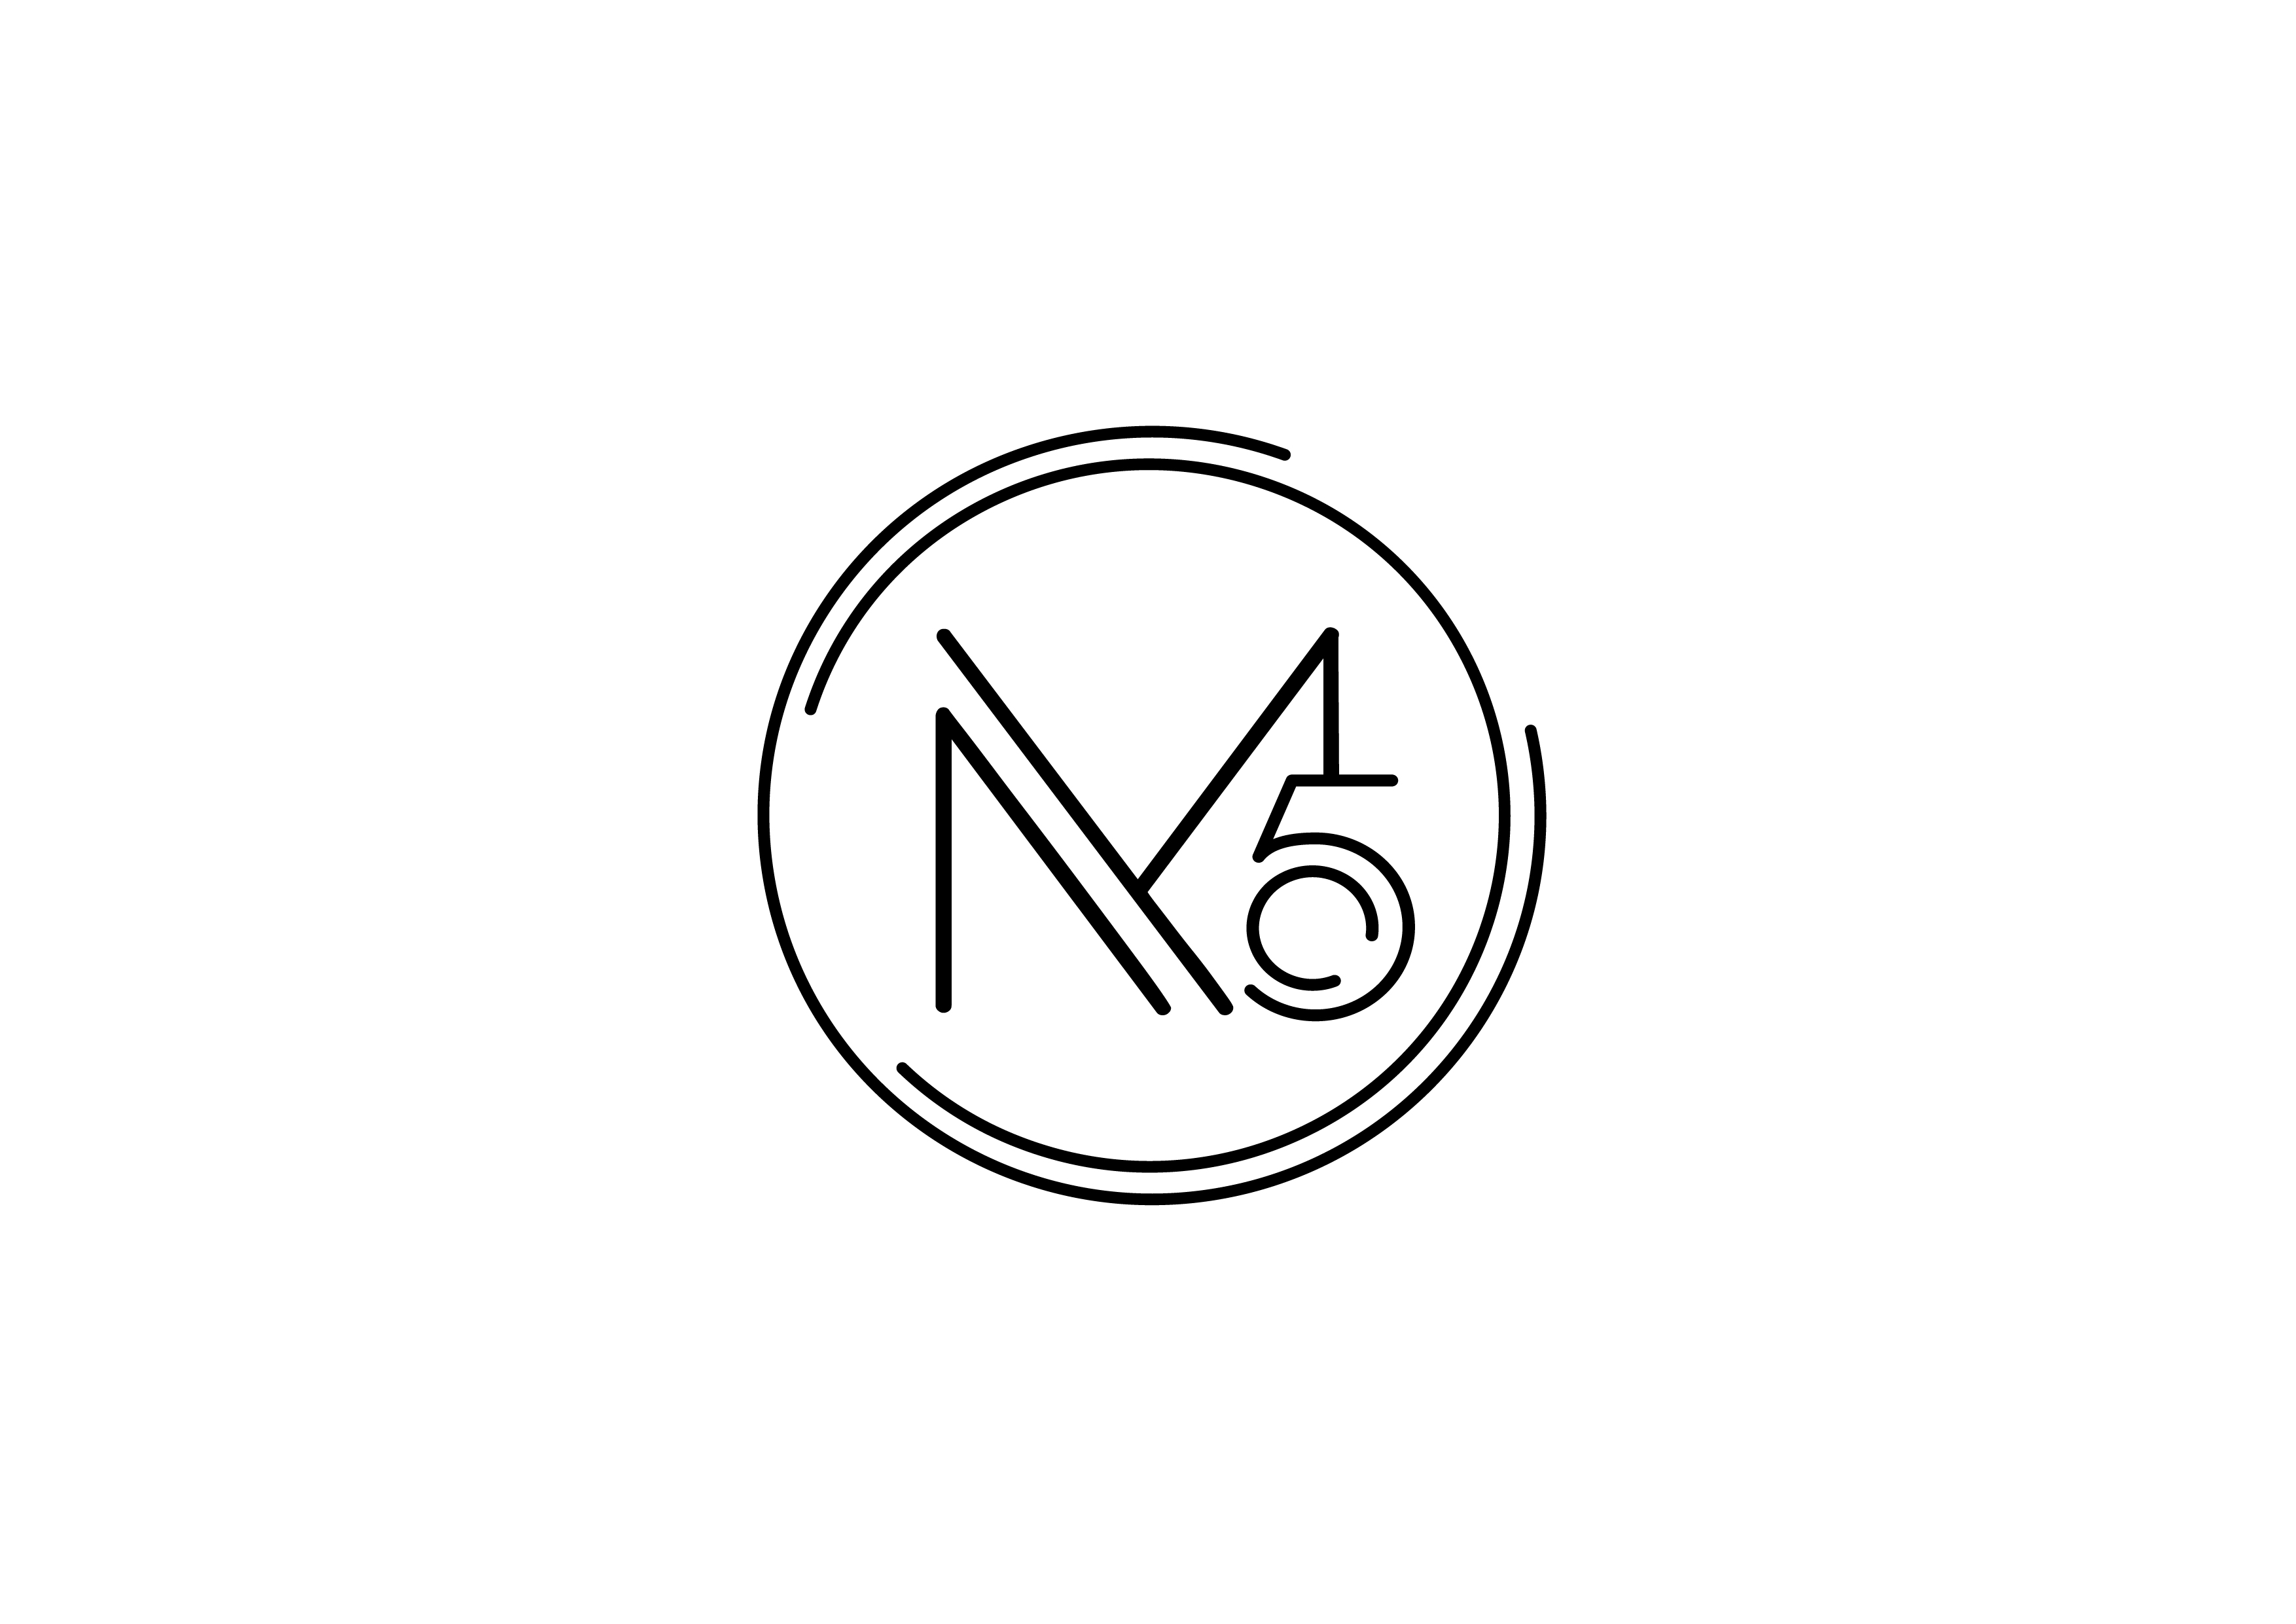 香港花店尚礼坊品牌 M5 Concept